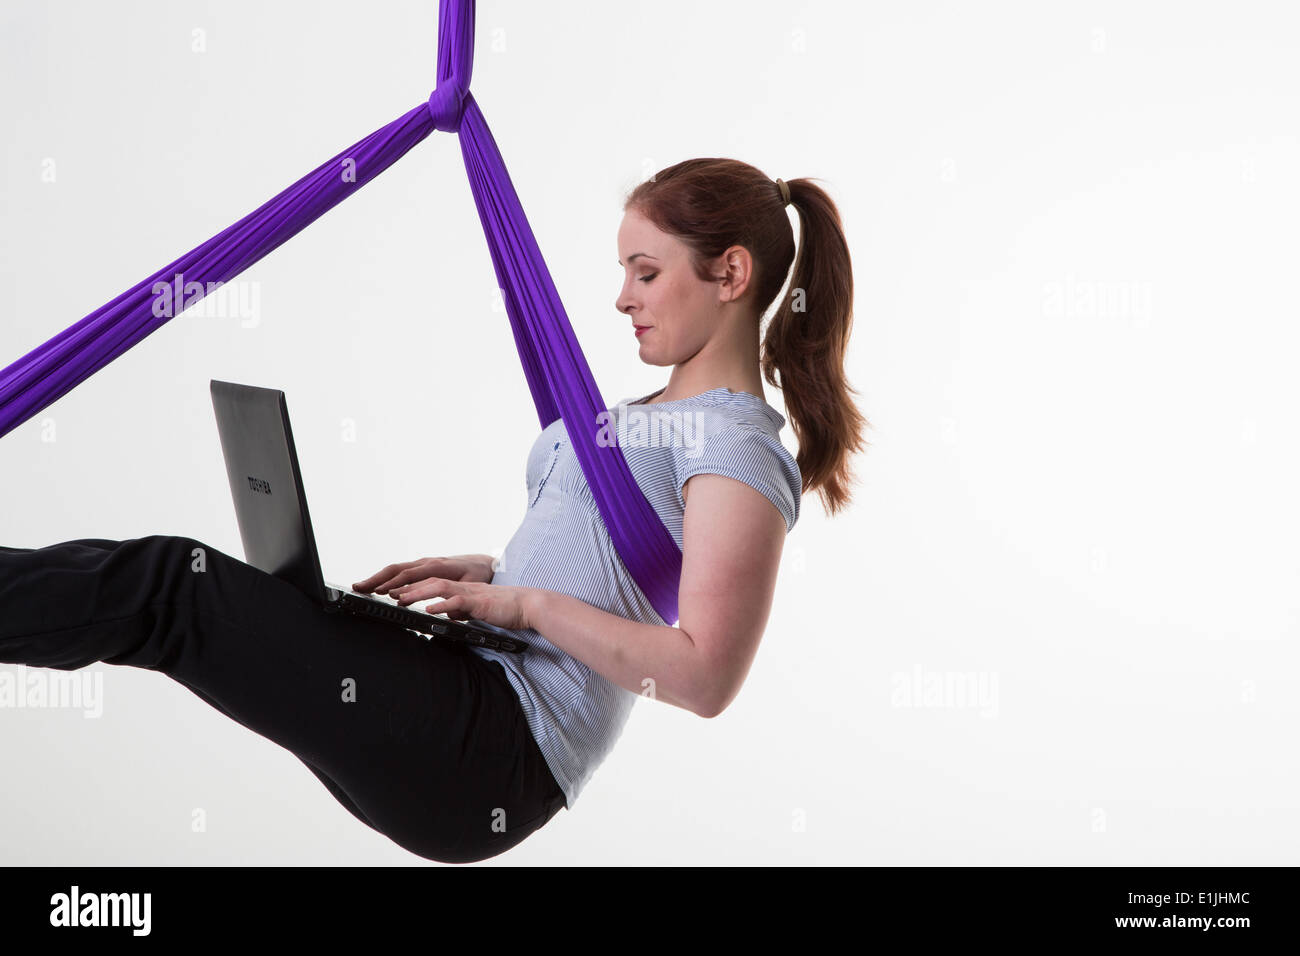 Frau hängen in der Luft mit einem Laptopcomputer Stockfoto